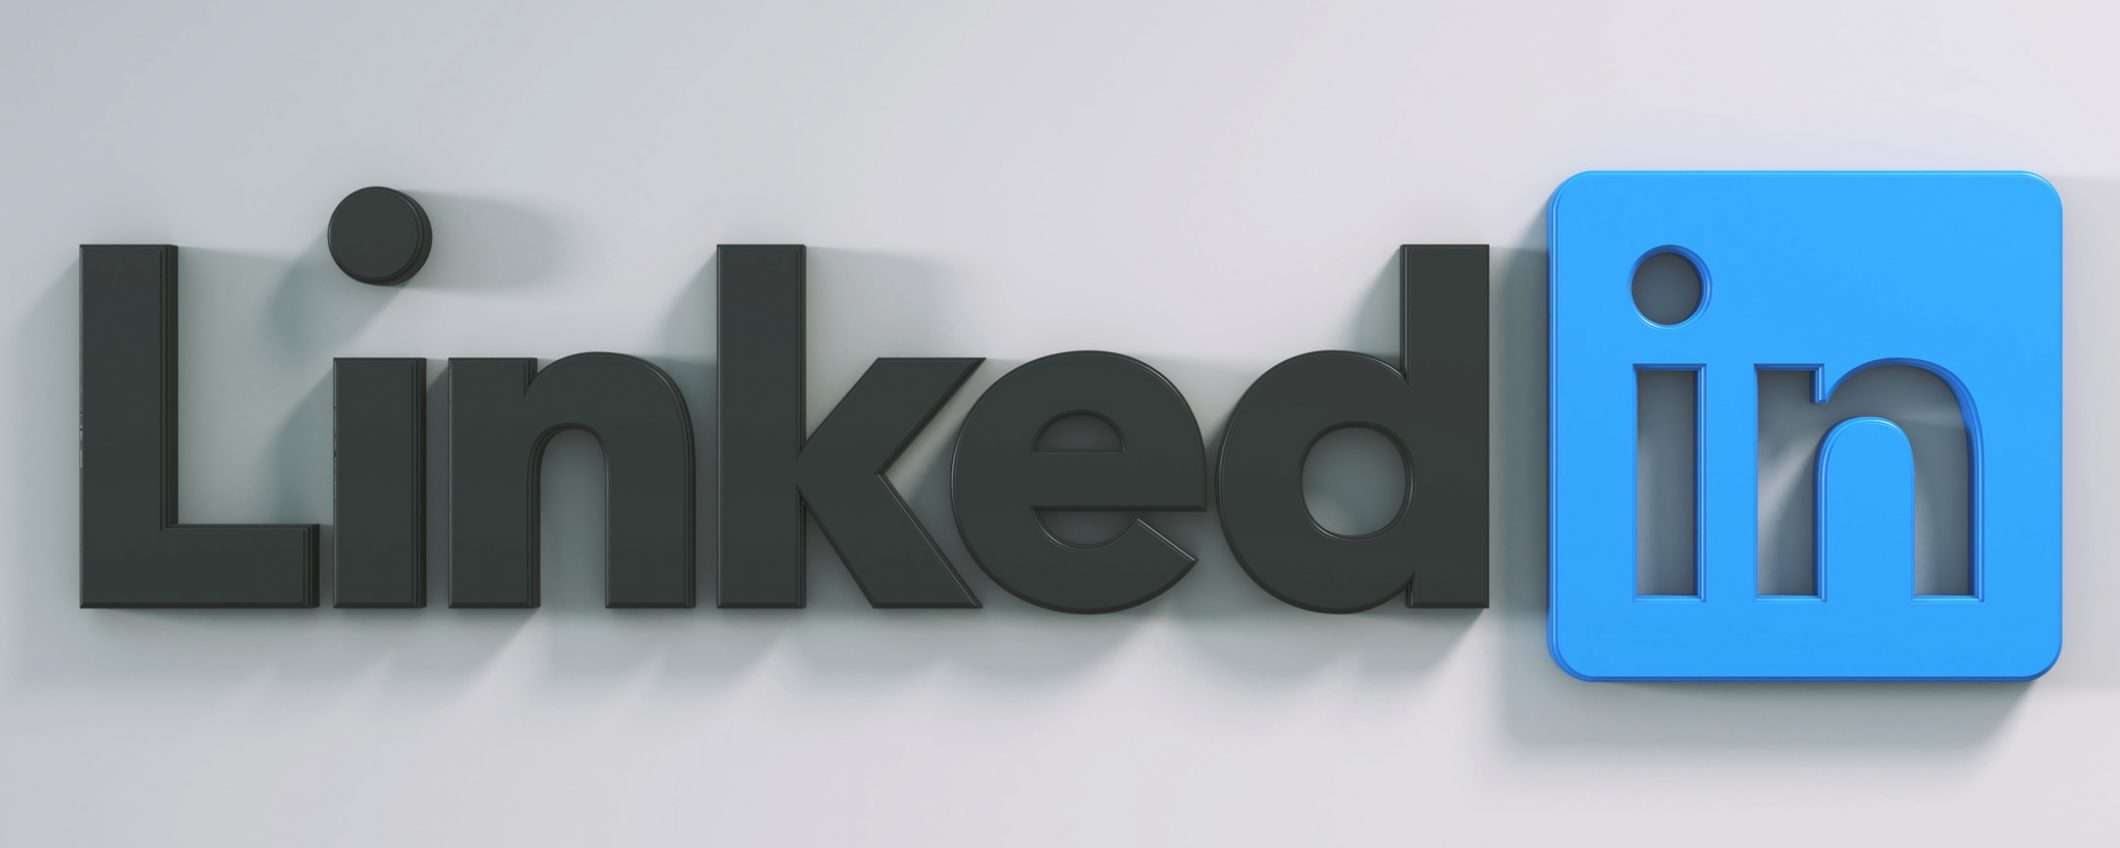 21,6 milioni di account fake via da LinkedIn